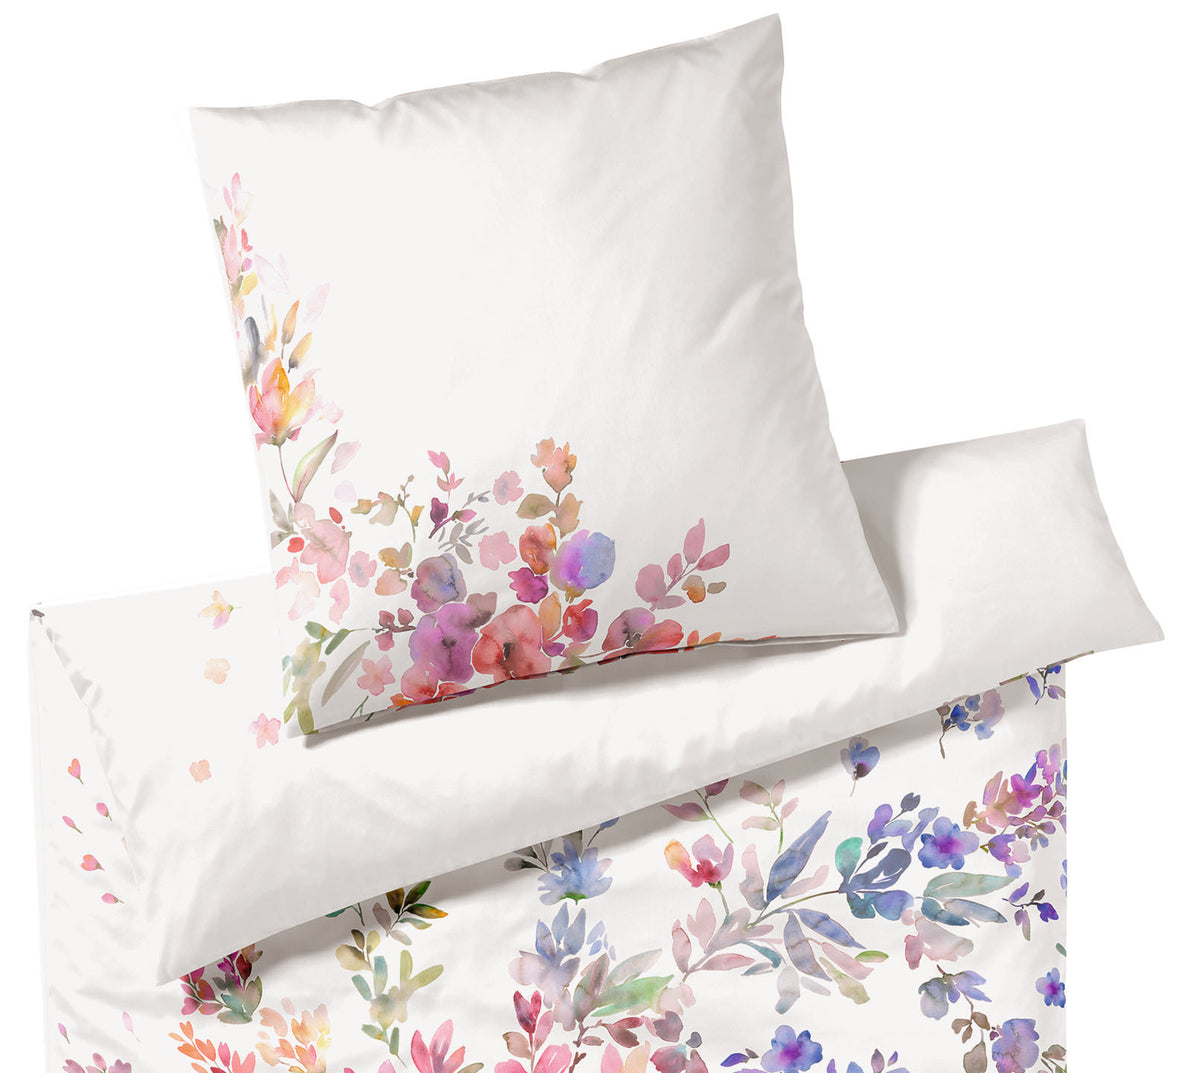 Seiden Satin Bettwäsche Amazing in Weiß Blumen Freisteller #farbe_Weiß #farbe_Weiß